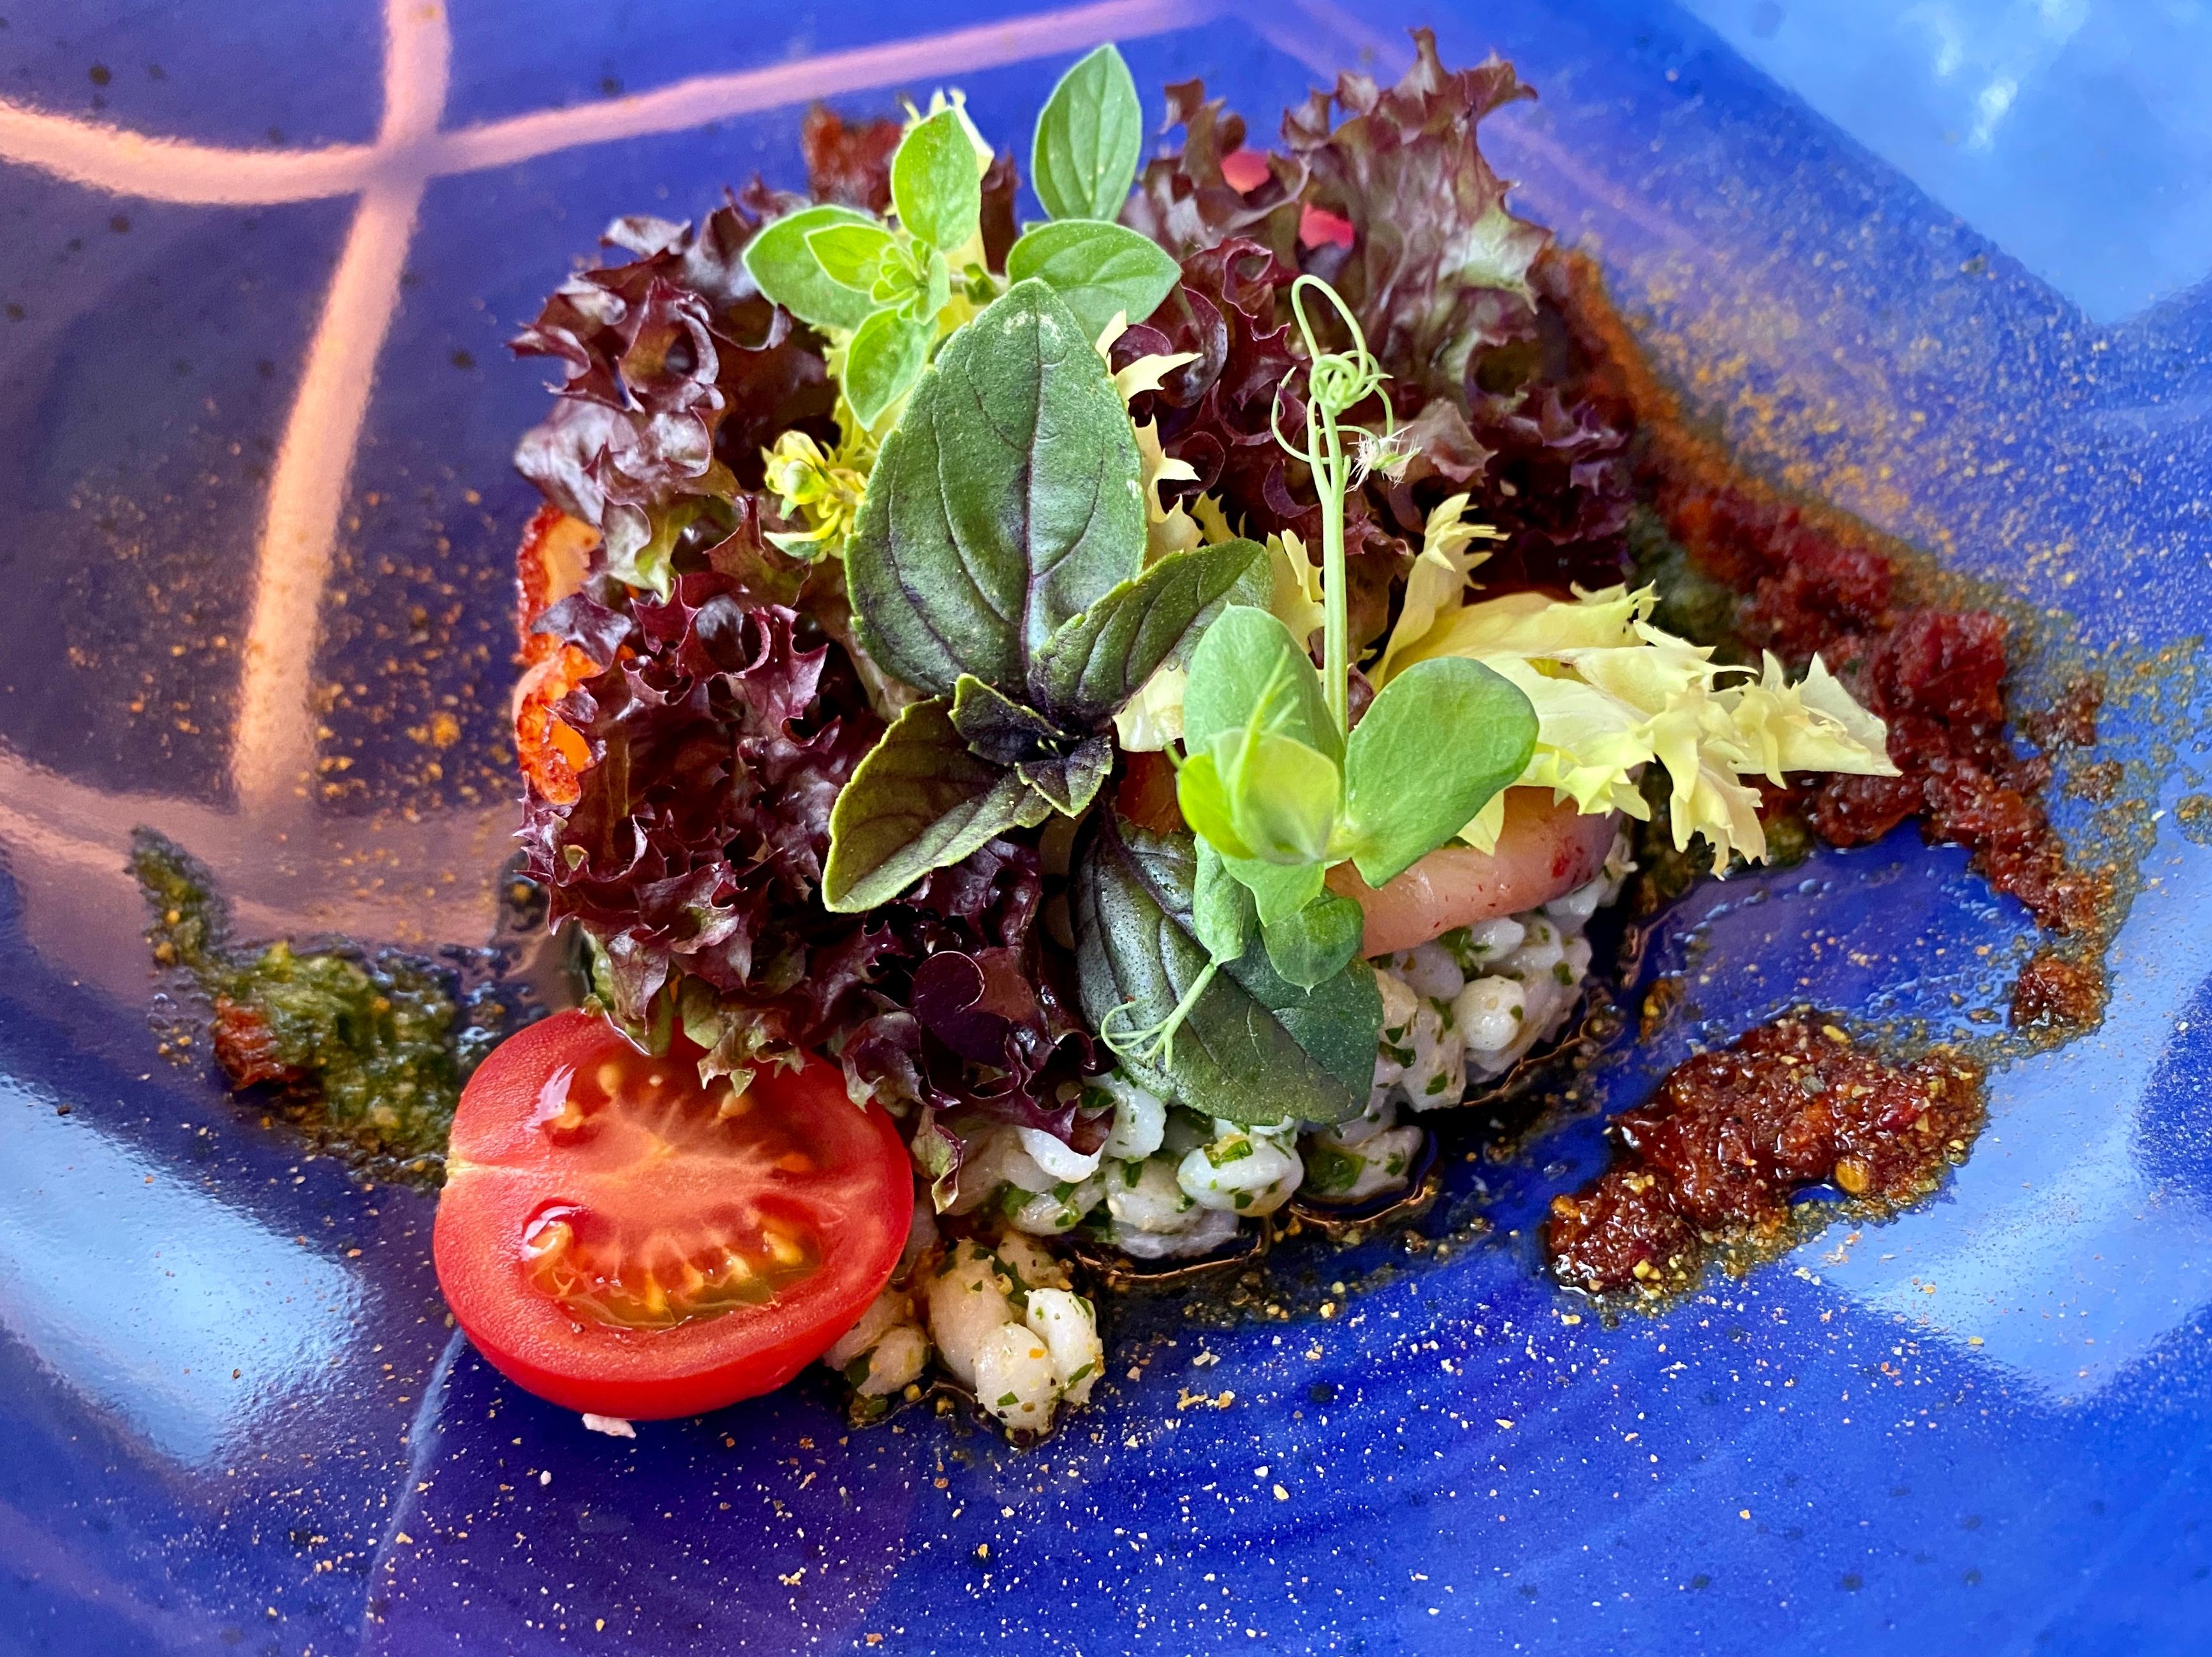 #summerfood#outdoorweek
Graupensalat mit Burrata, ein Traum! 